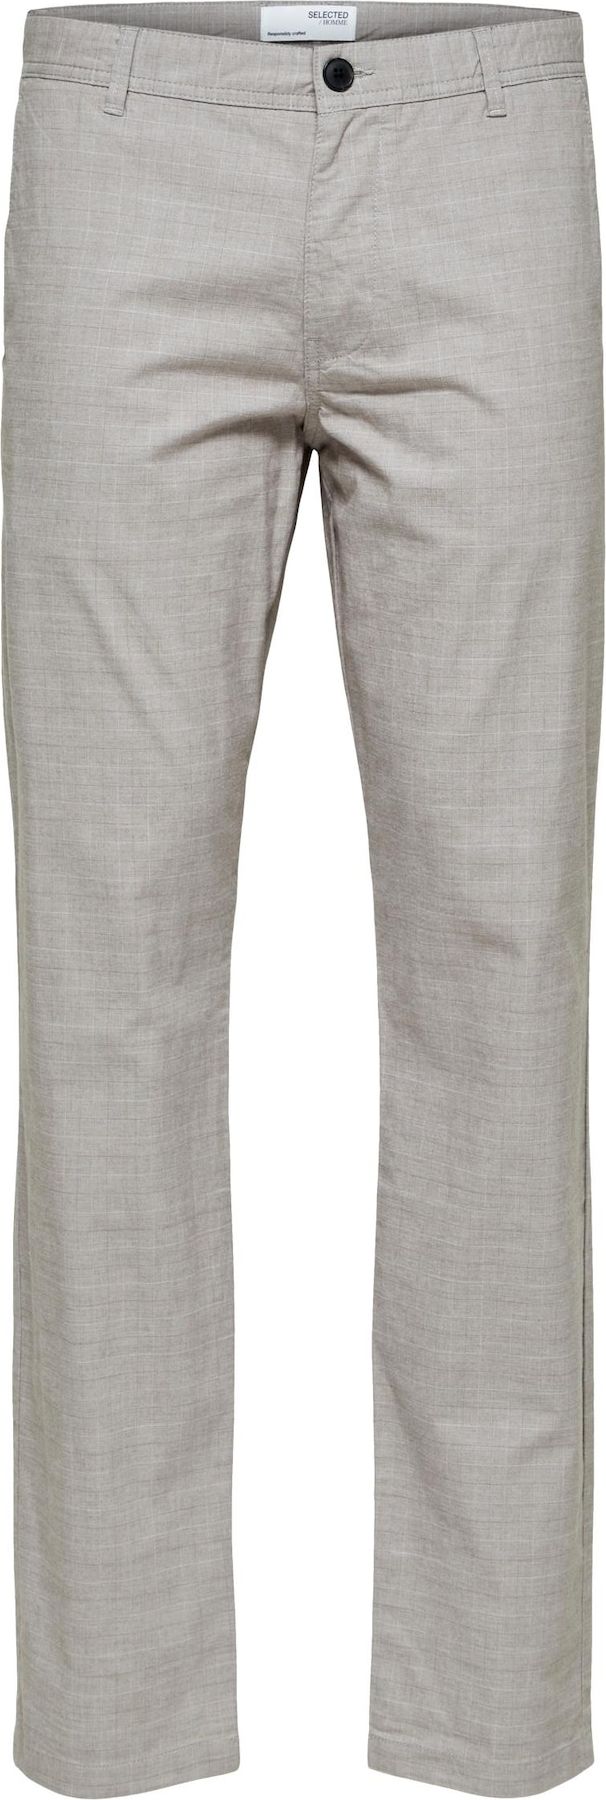 SELECTED HOMME Chino kalhoty světle šedá / bílá